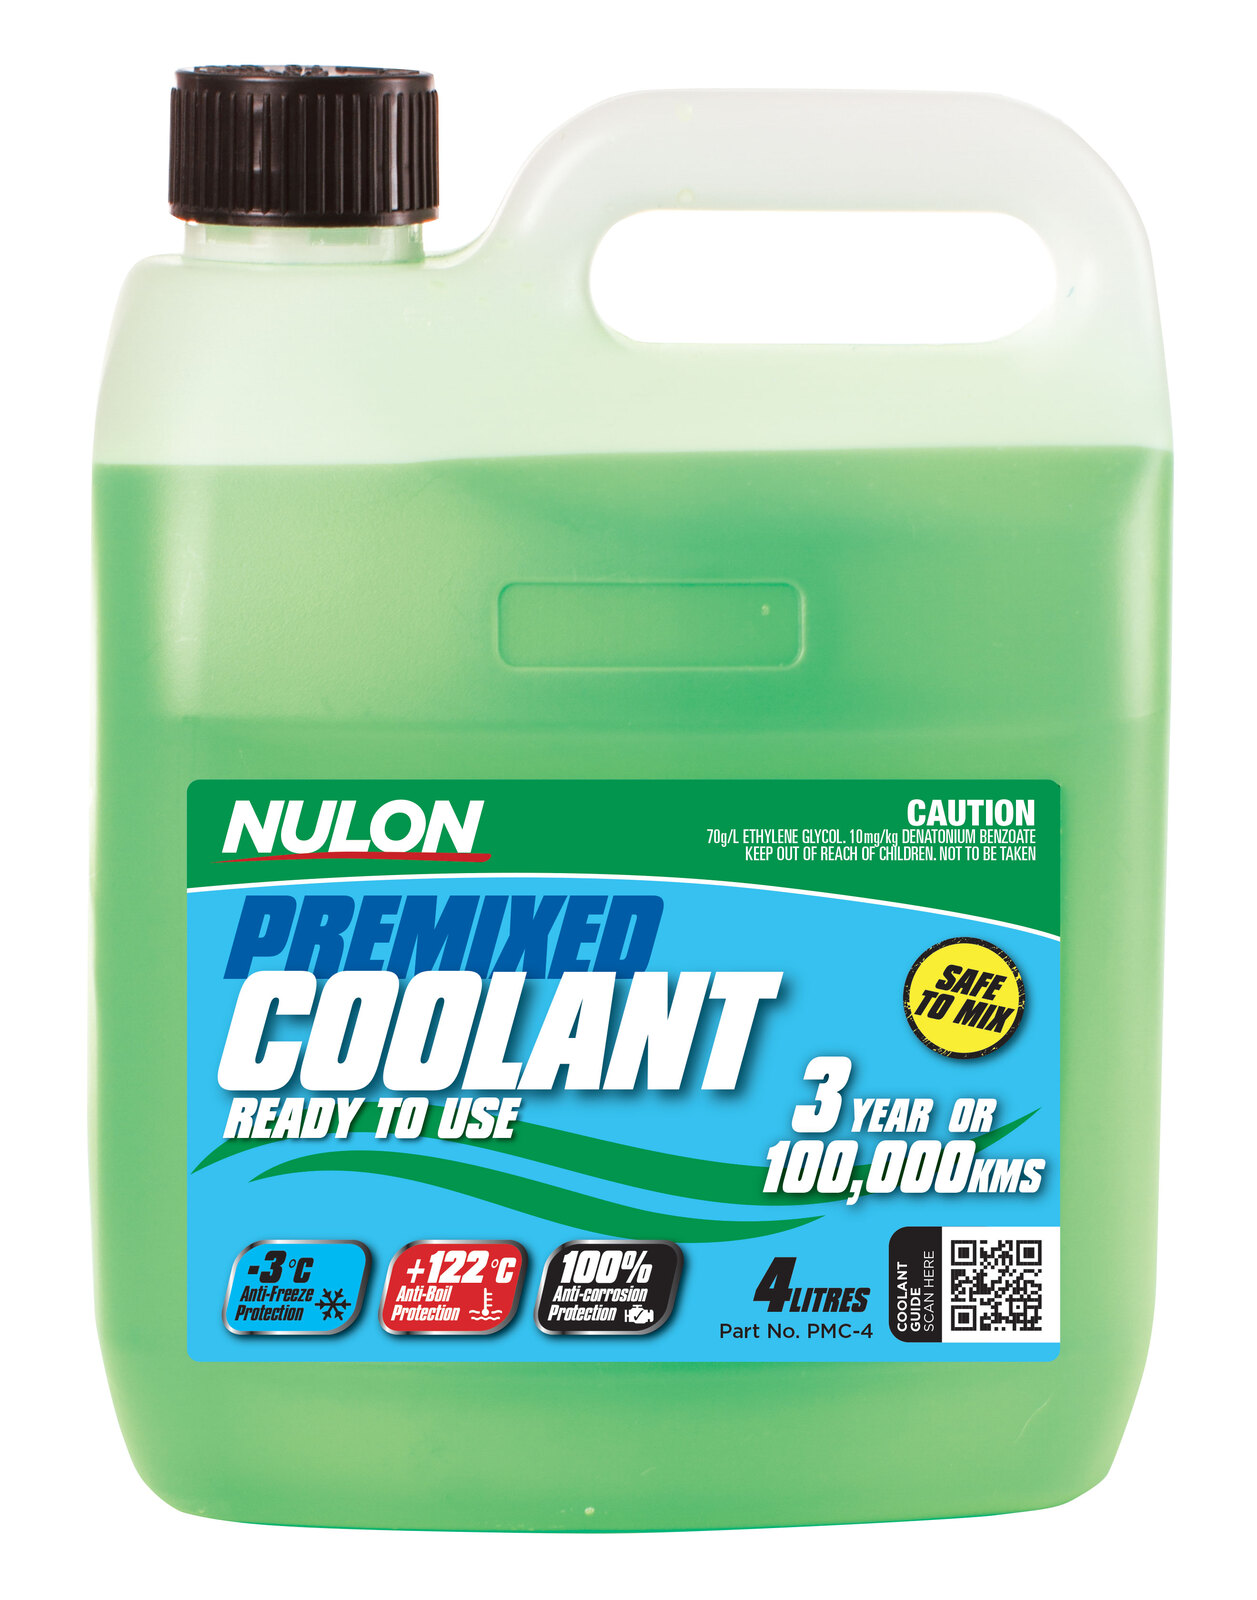 NULON Premix Coolant 4L, Each